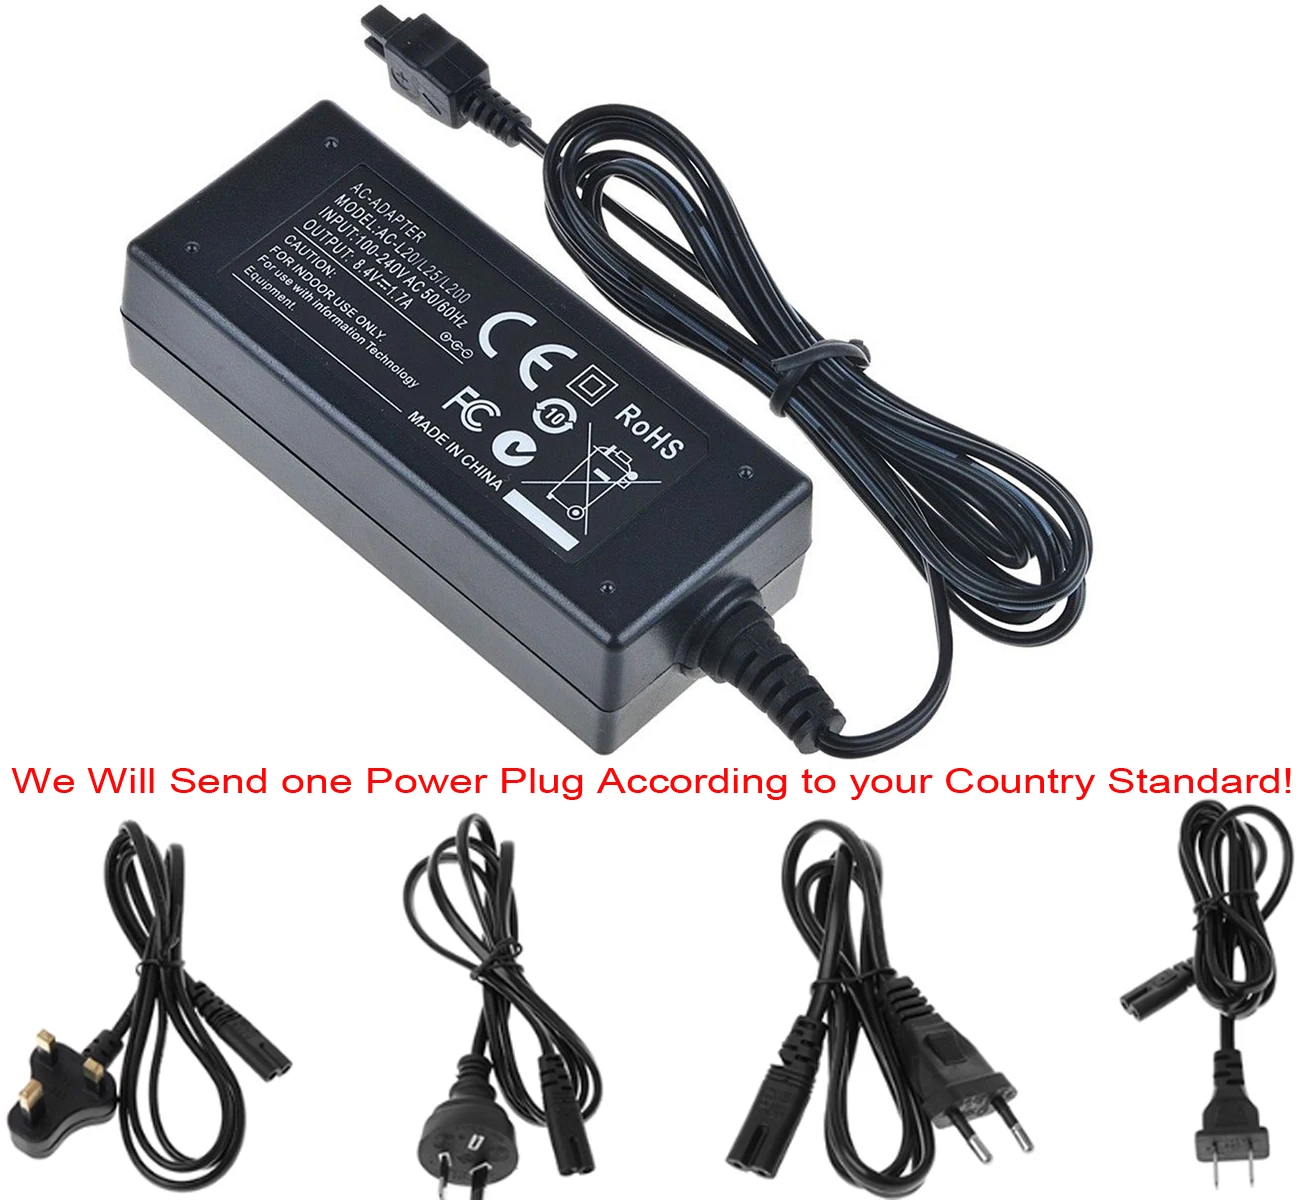 AC Мощность адаптер Зарядное устройство для sony HDR-CX450E, DR-CX455E, HDR-CX480E, HDR-CX485E Handycam